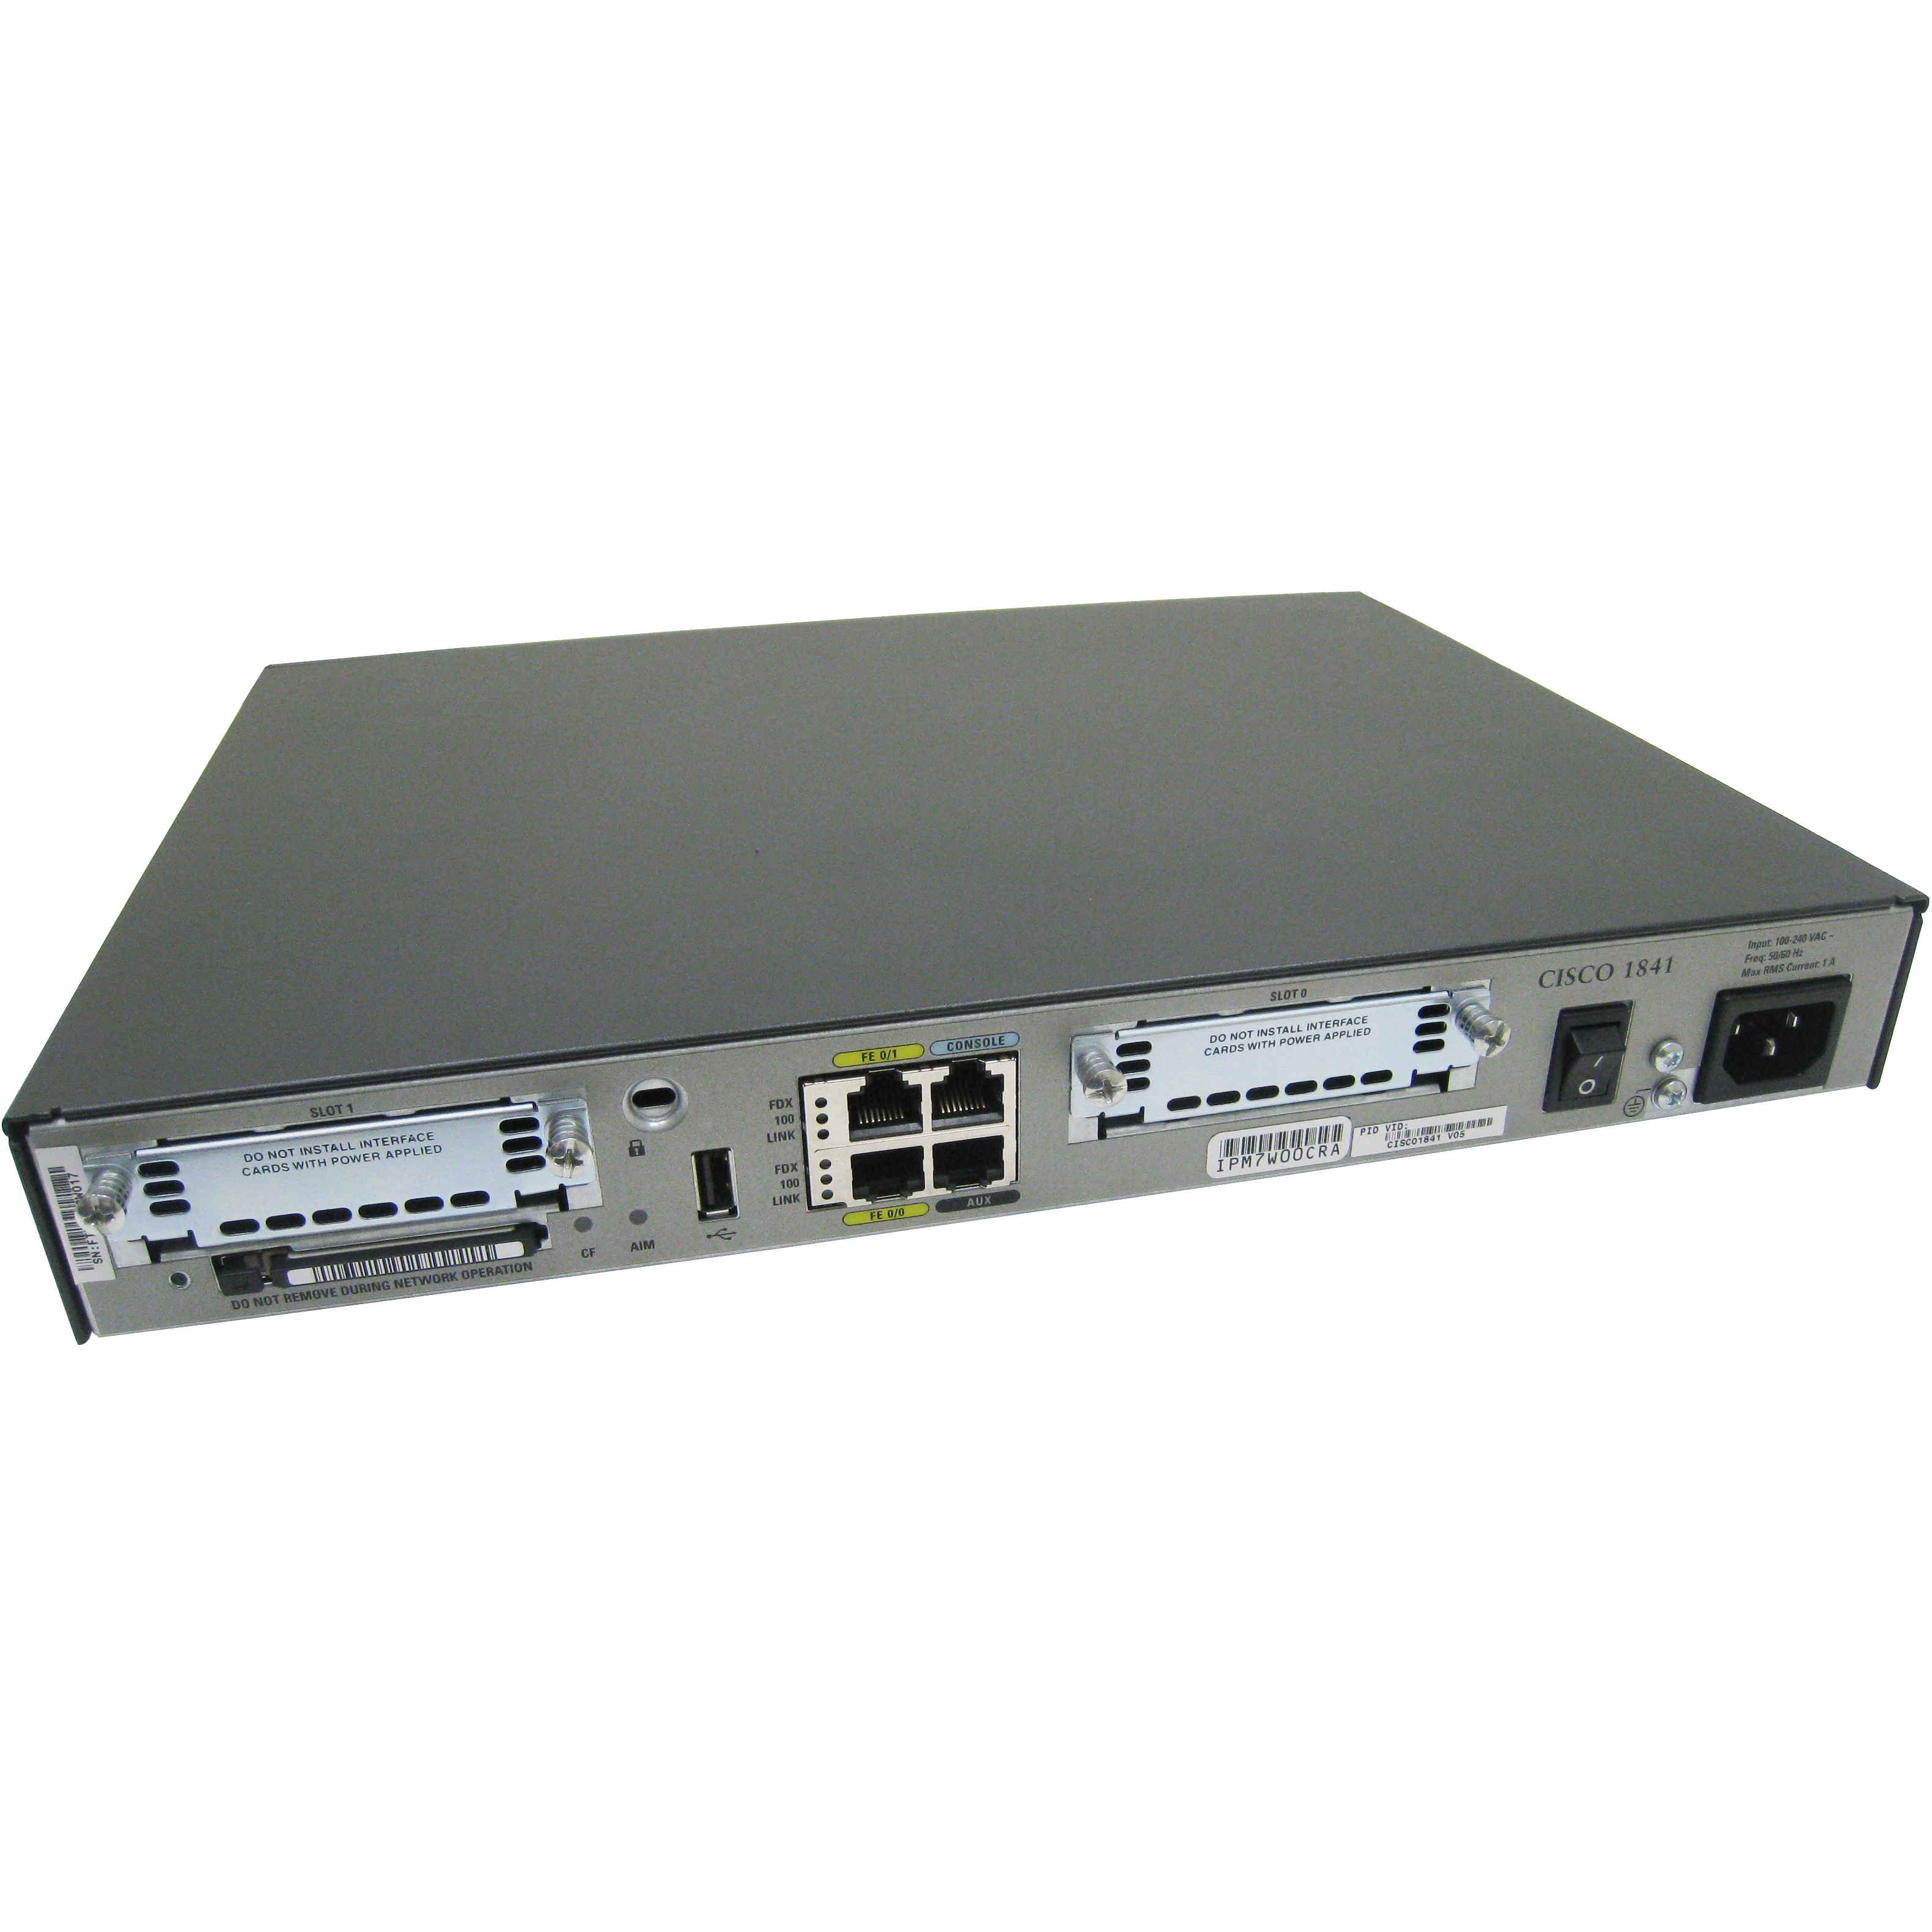 Cisco CISCO1841-ADSL